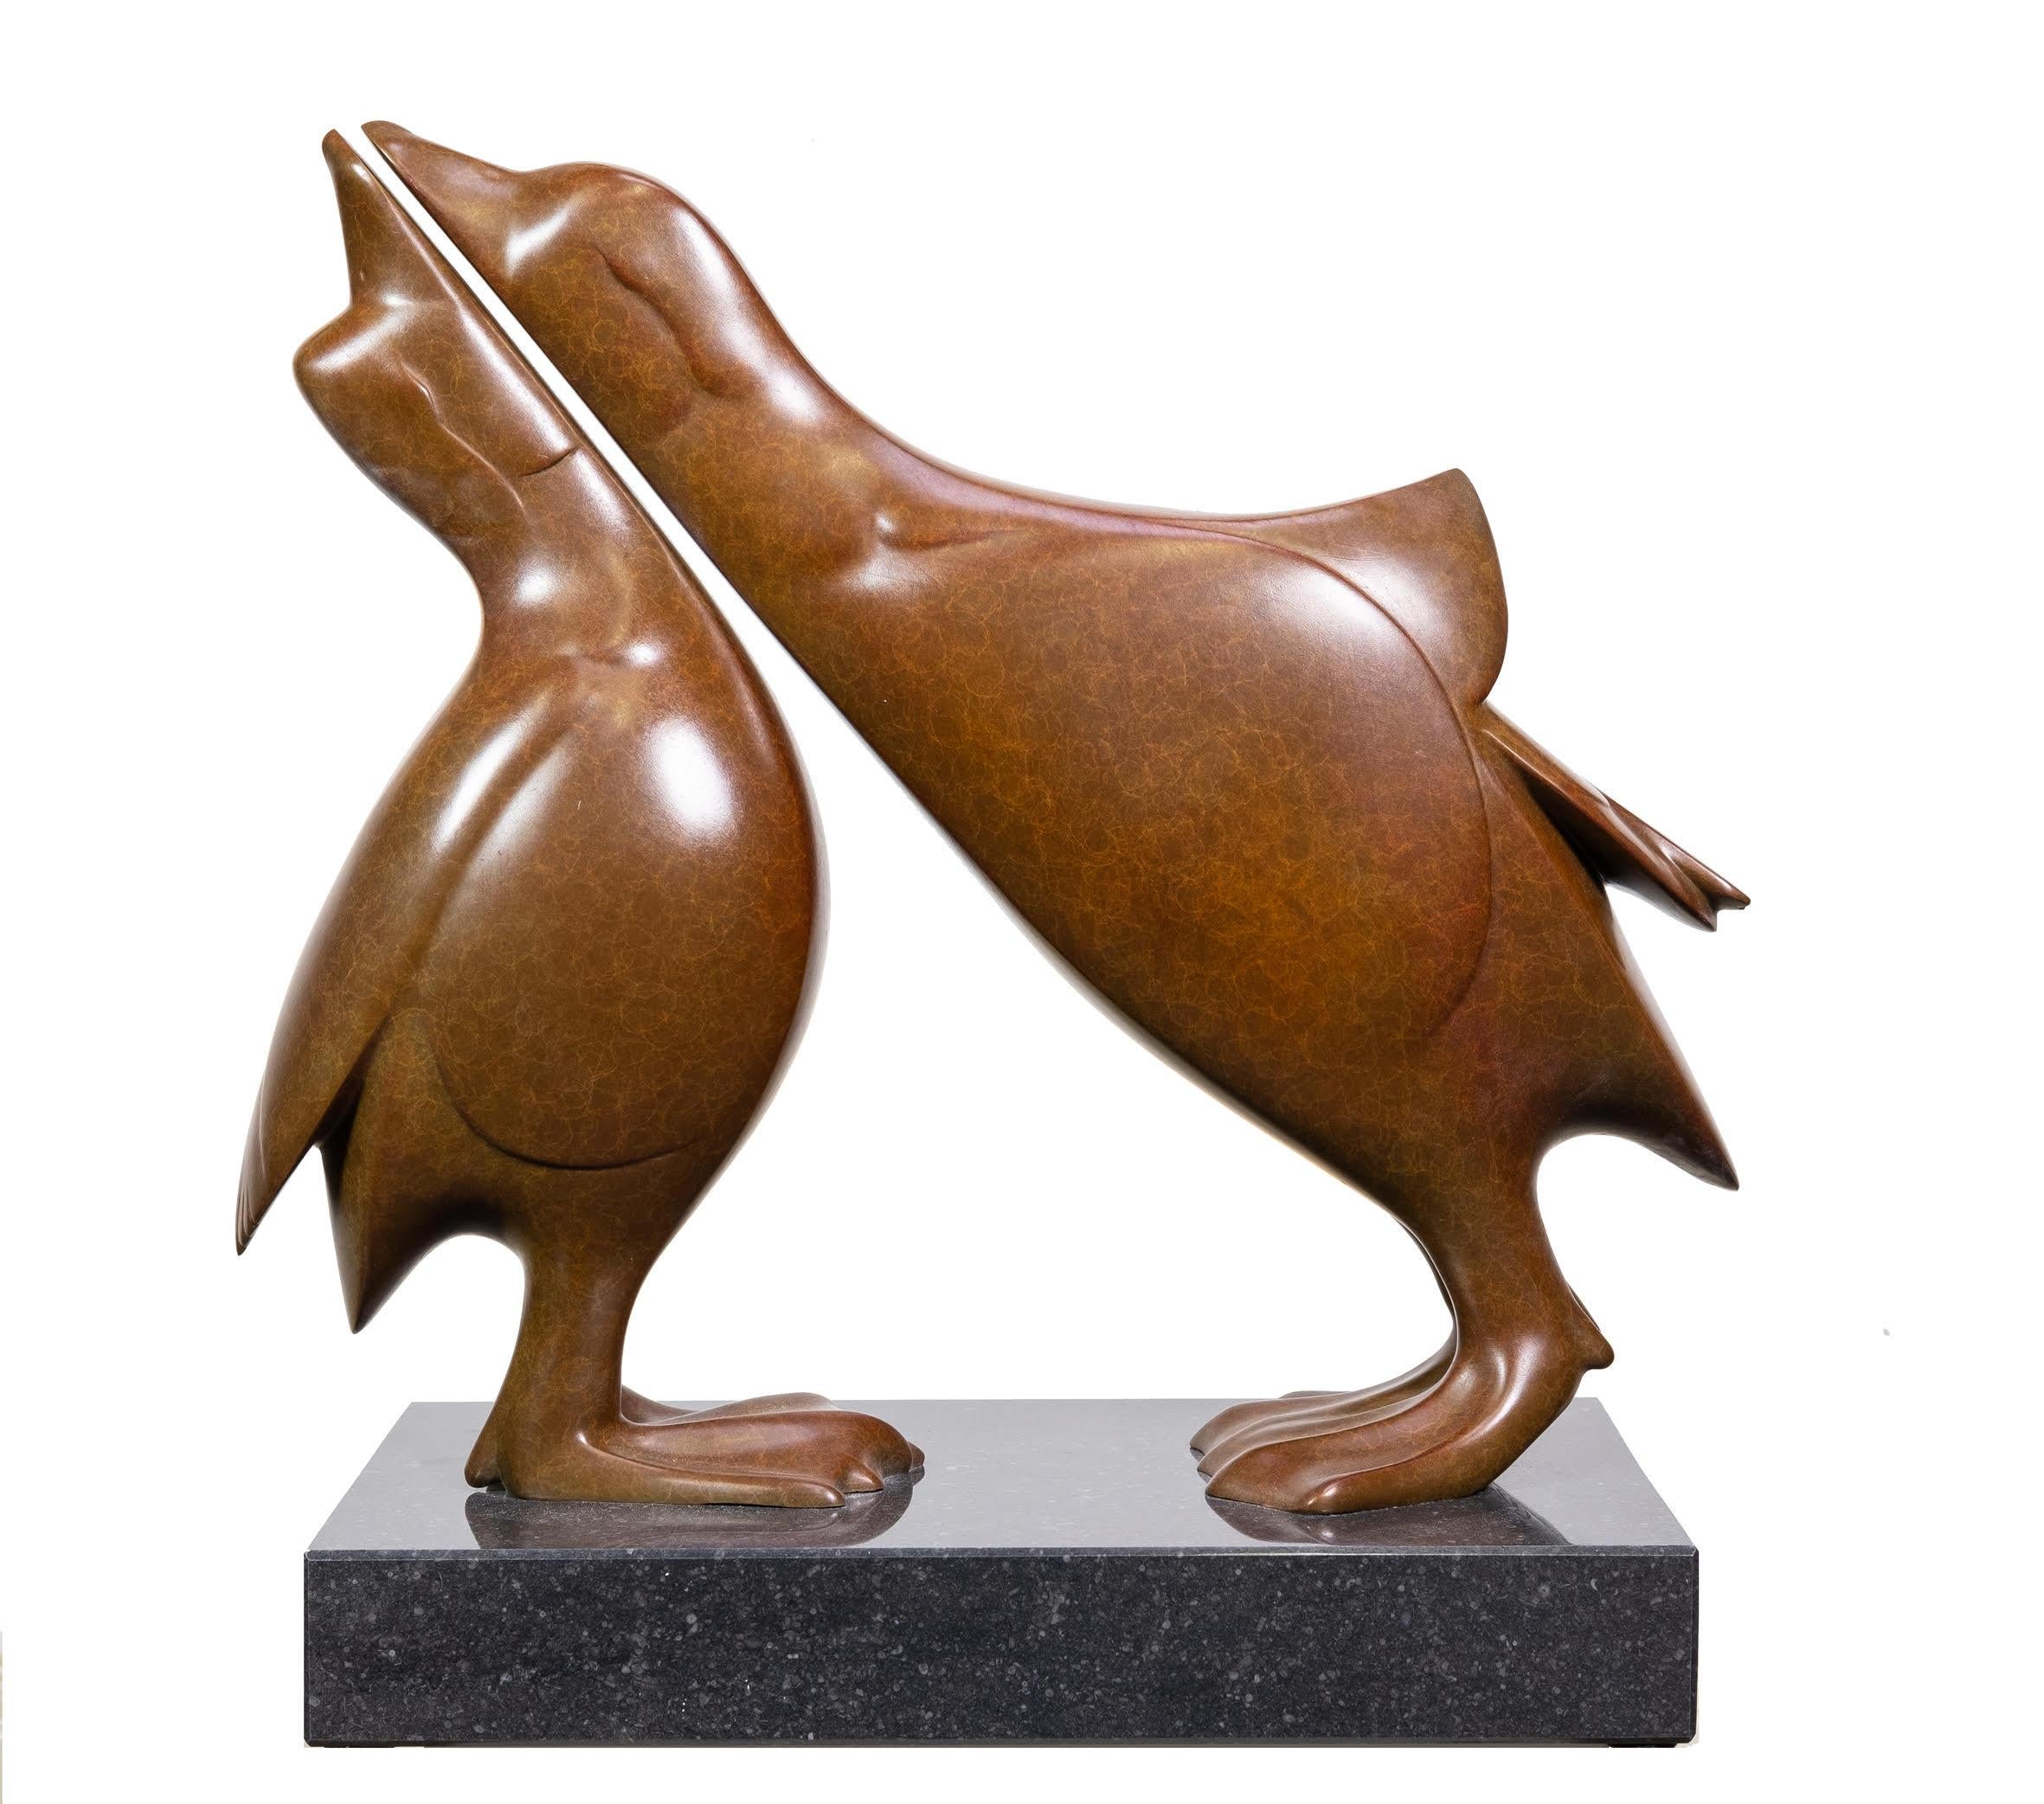 Evert den Hartog Figurative Sculpture - Twee Mandarijneendjes Mandarin Ducks Small Bronze Sculpture  Limited  Edition